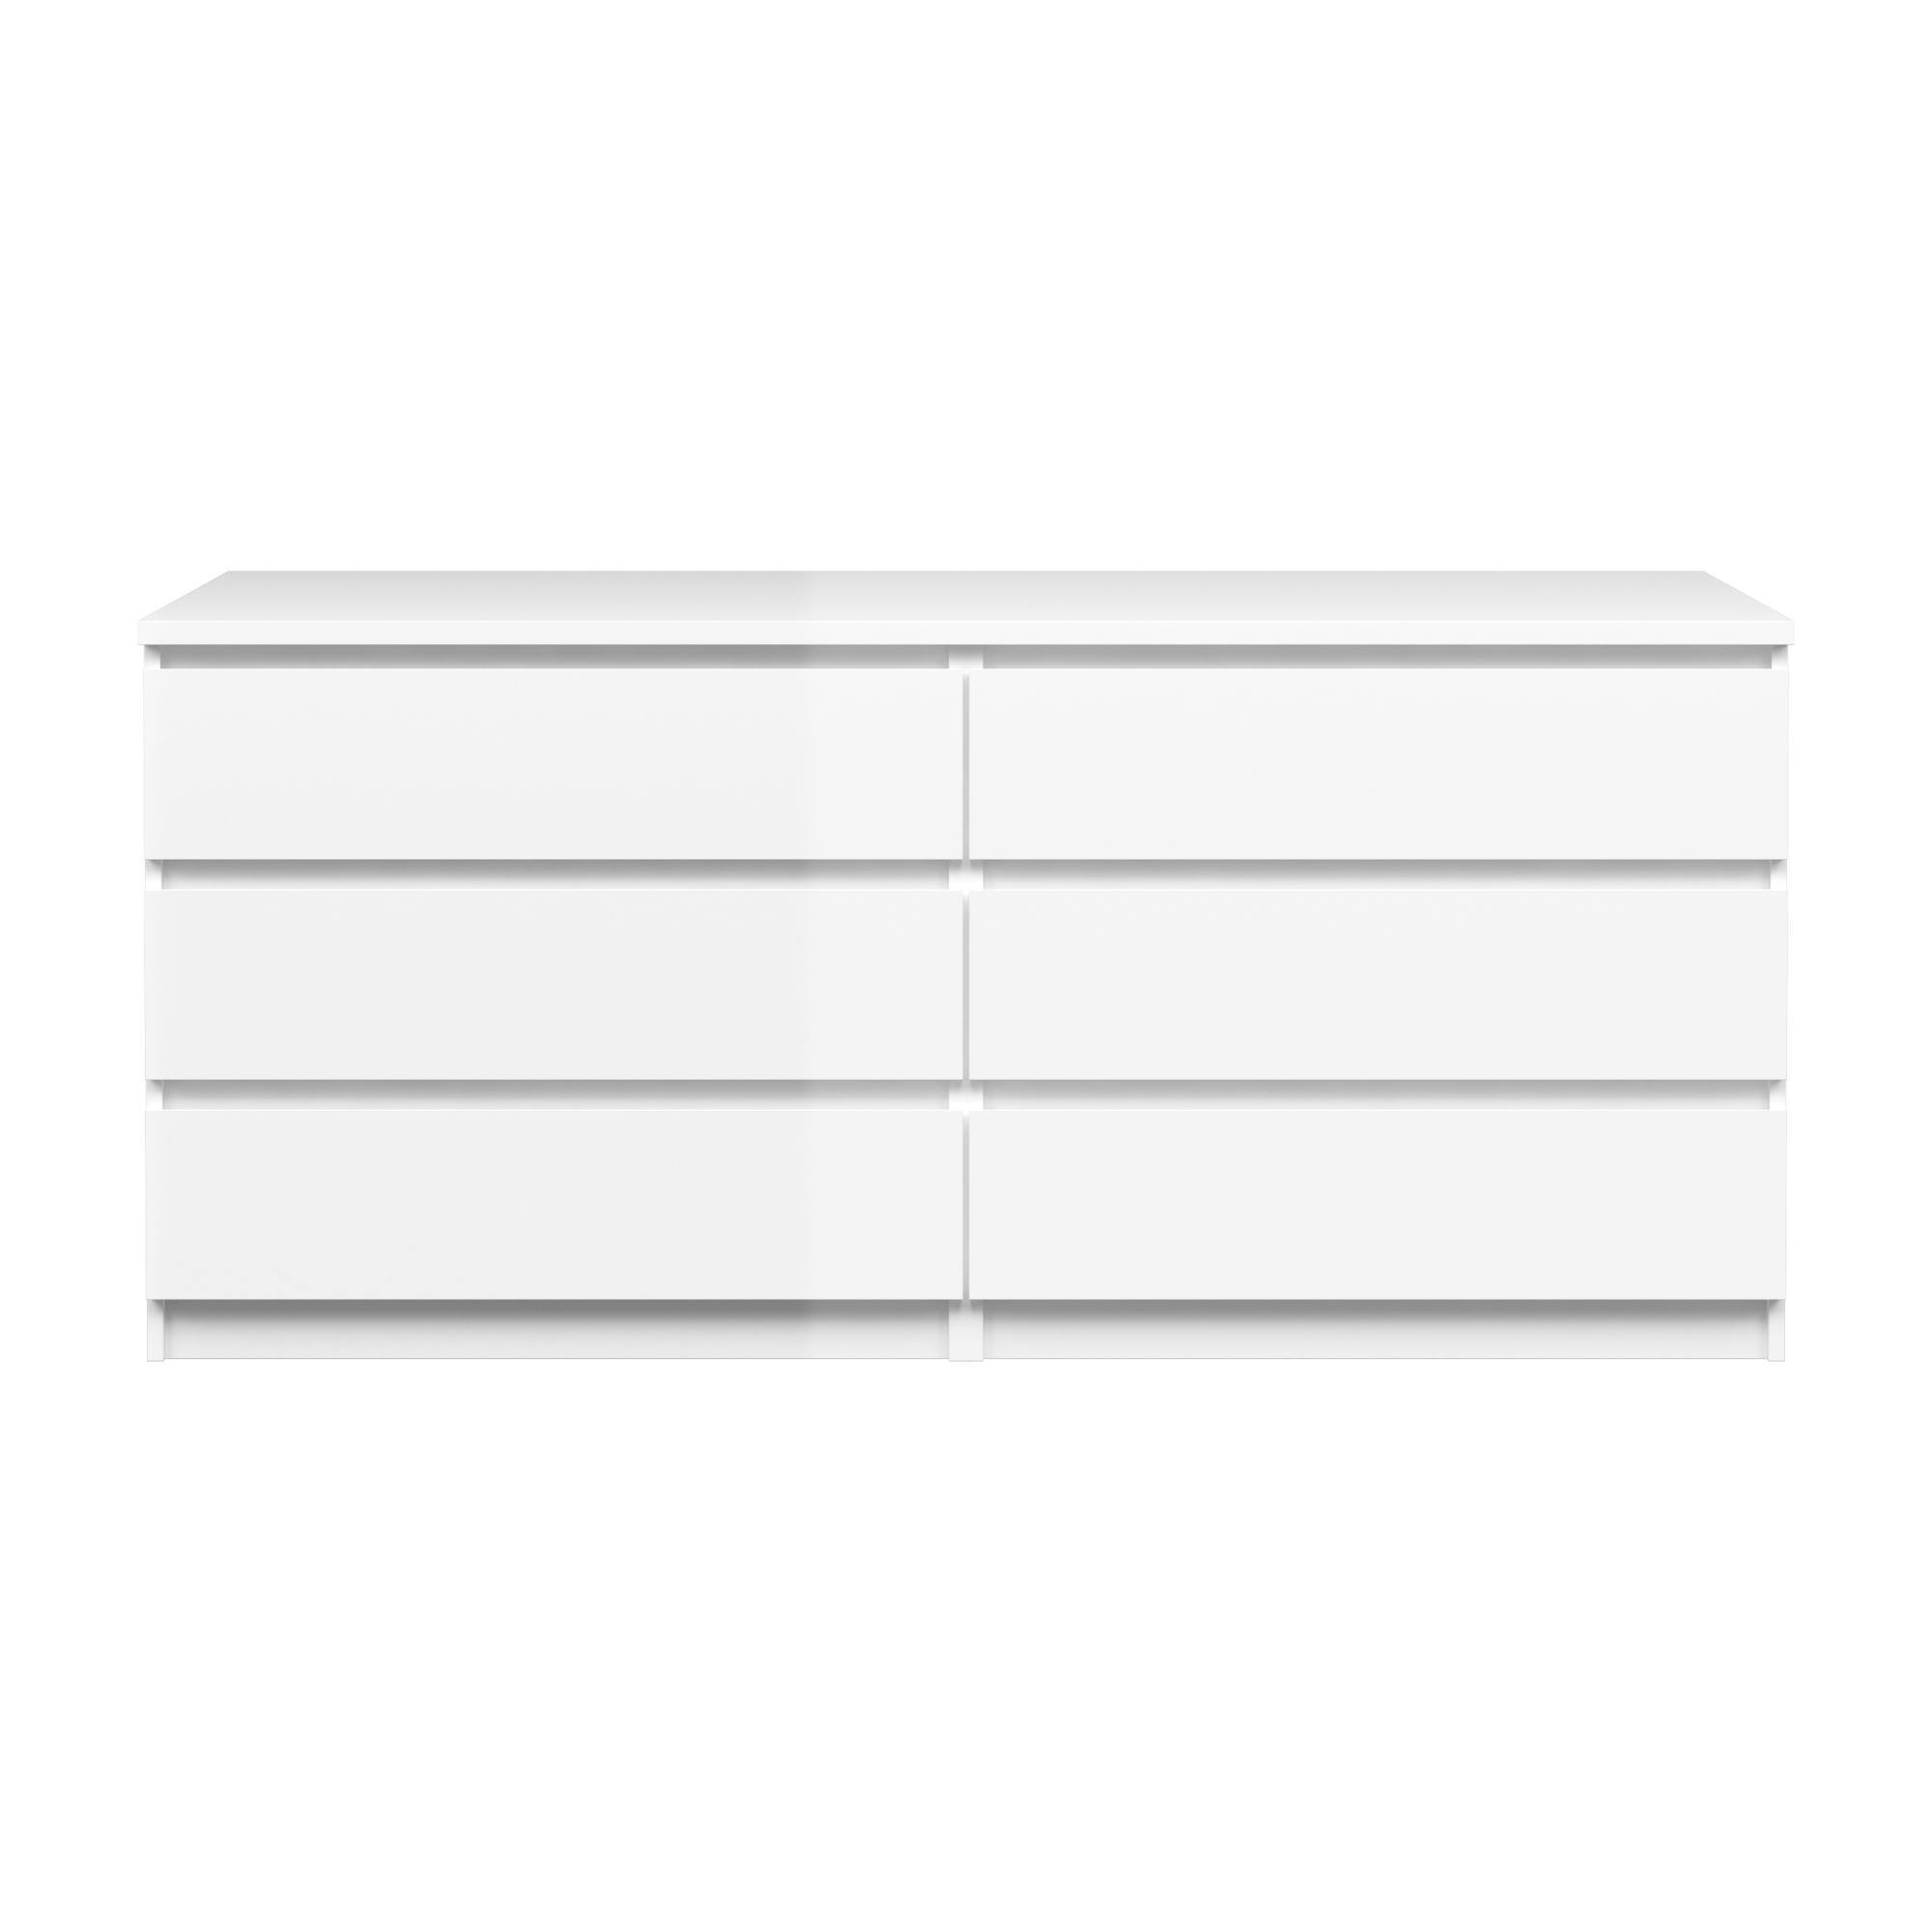 Cassettiera a sei cassetti, colore bianco lucido, cm 153 x 70 x 50